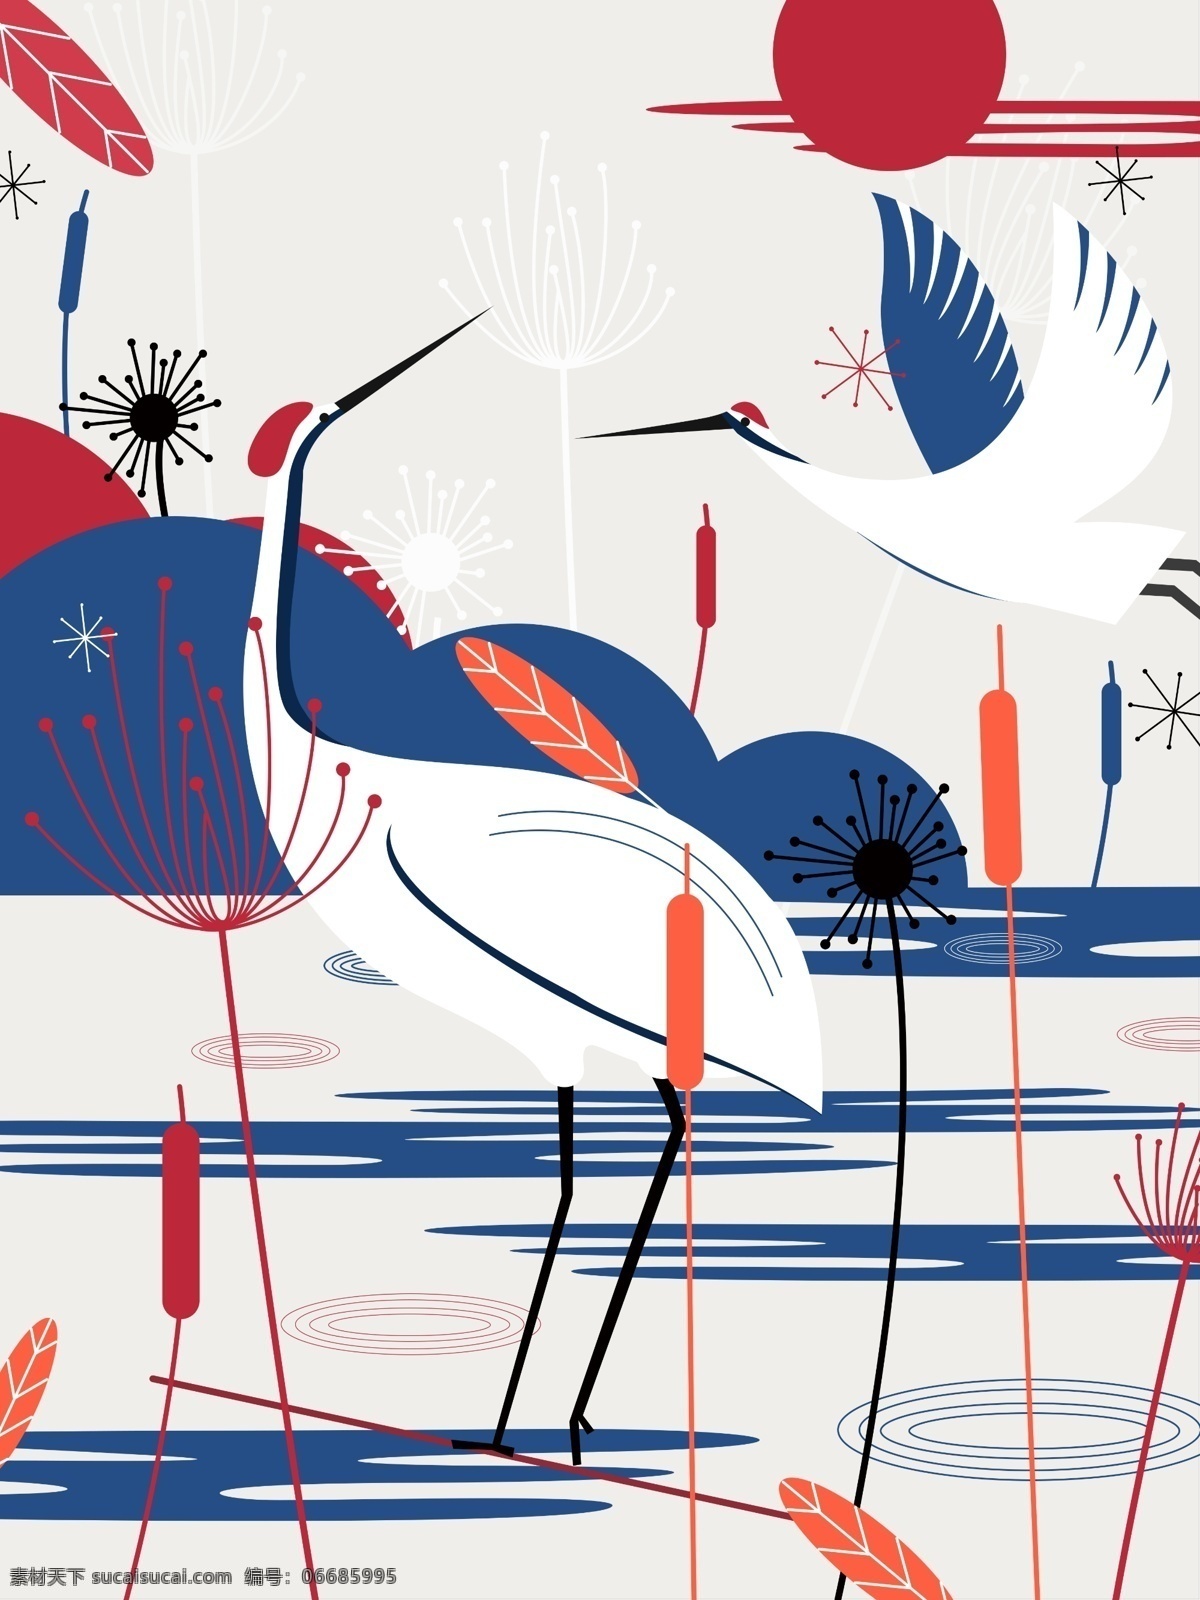 自然 印记 鹤 植物 和谐 绘画 蓝红 红日 远山 蒲公英 自然印记 动物与植物 色彩对比 江面 扁平风